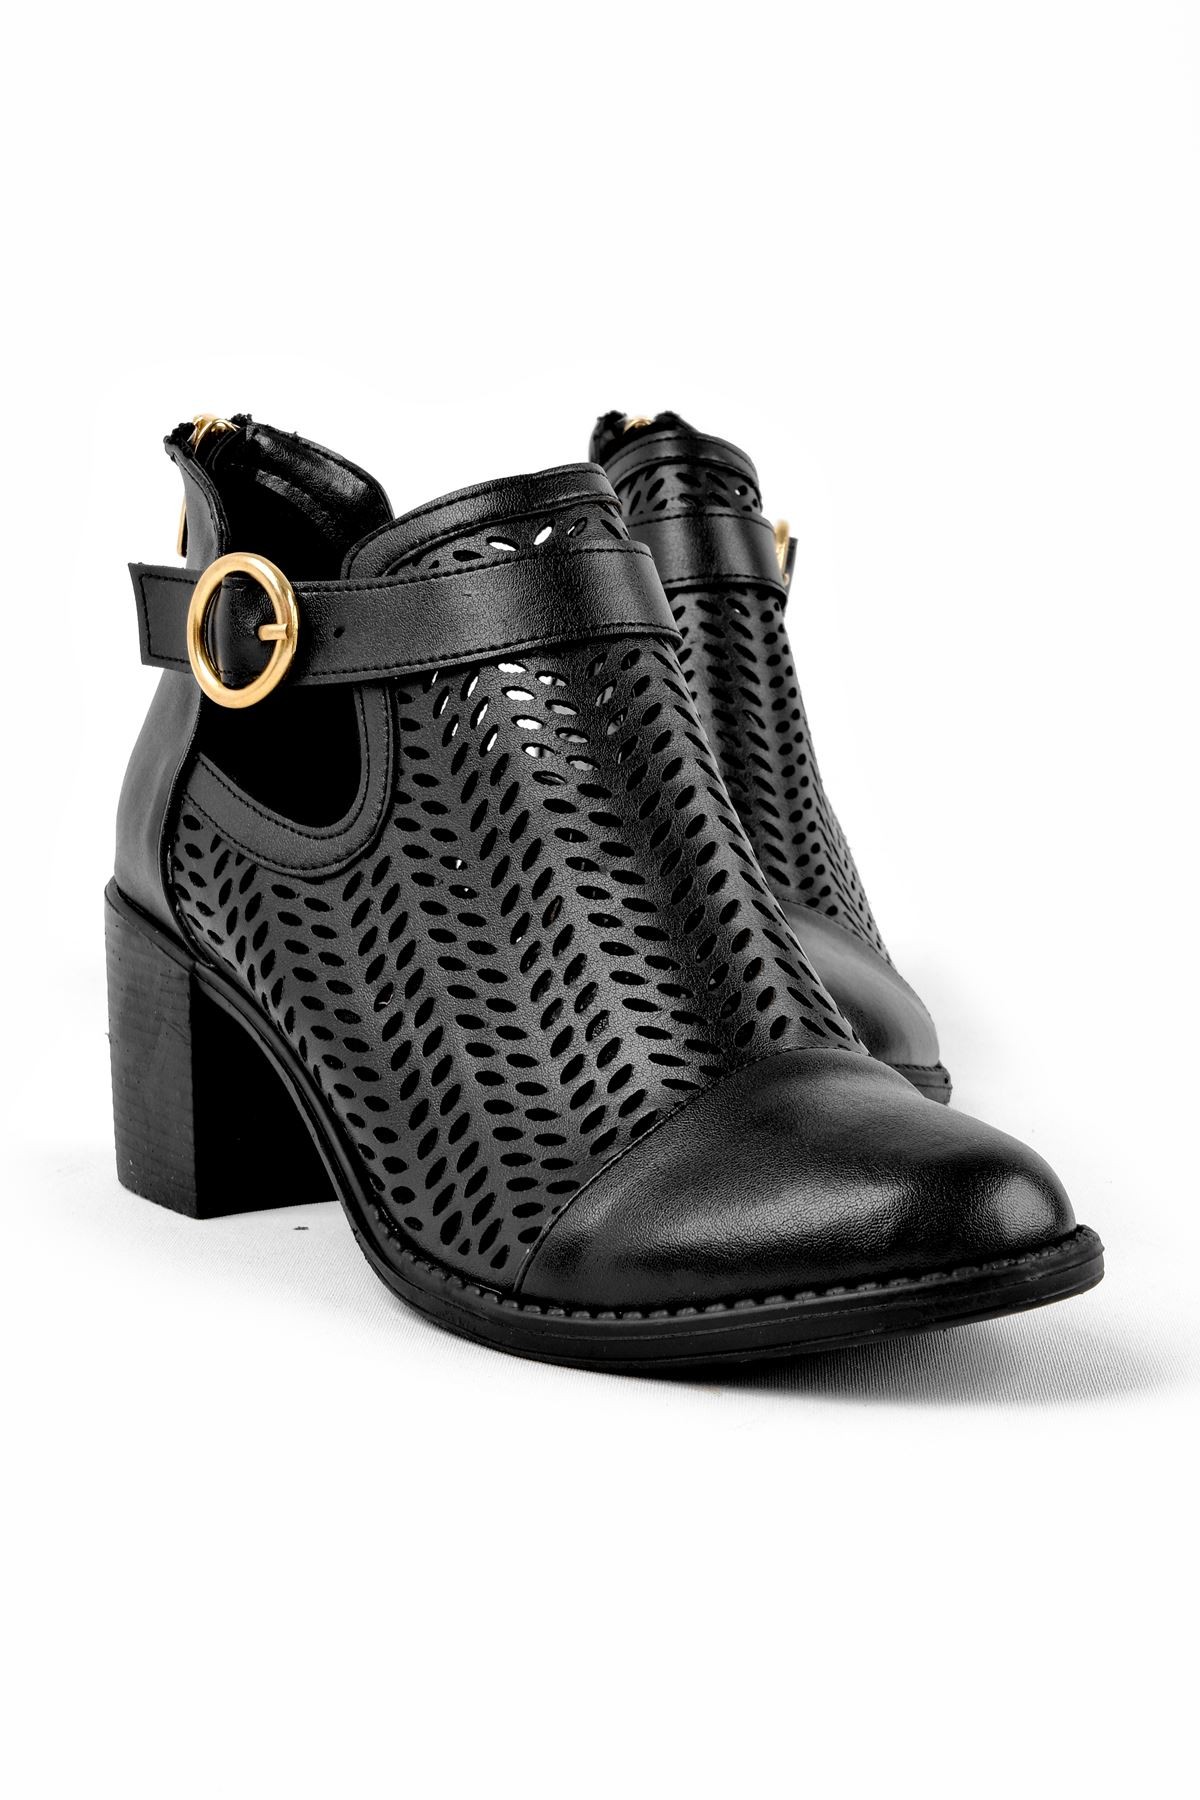 Adele Kadın Yazlık Delikli Bot Topuklu Ayakkabı (B2236) - Siyah